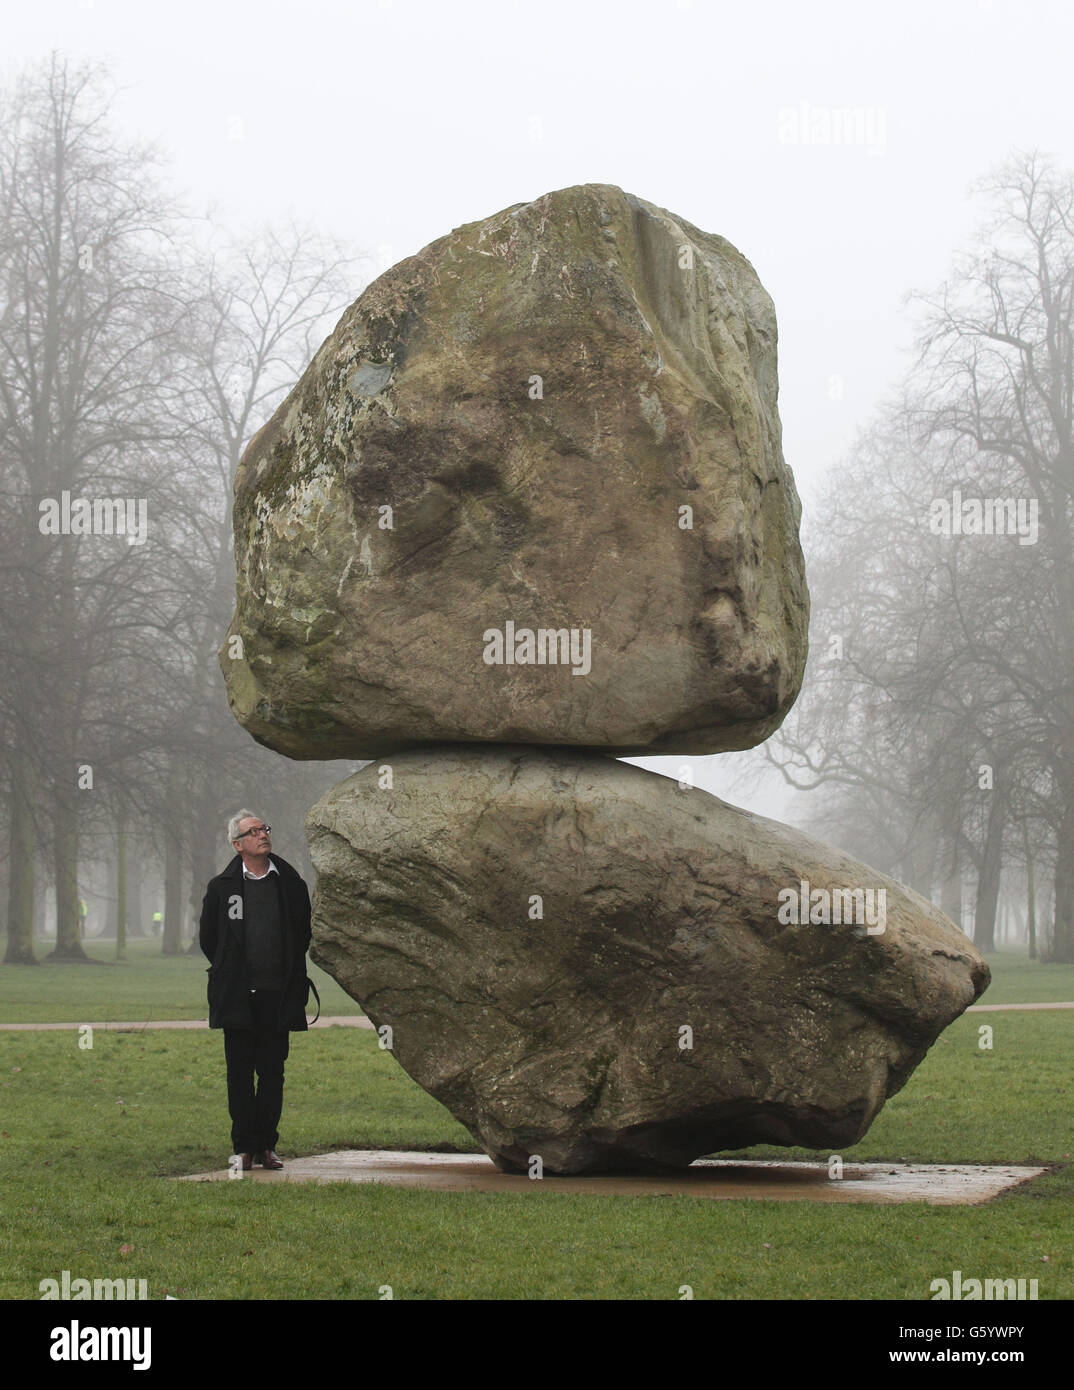 Der Künstler Peter Fischli steht neben seiner großformatigen Boulderskulptur 'Rock on Top of Another Rock', die das Künstlerduo Fischli/Weiss bei der Enthüllung in der Serpentine Gallery im Hyde Park, London, gezeigt hat. Stockfoto